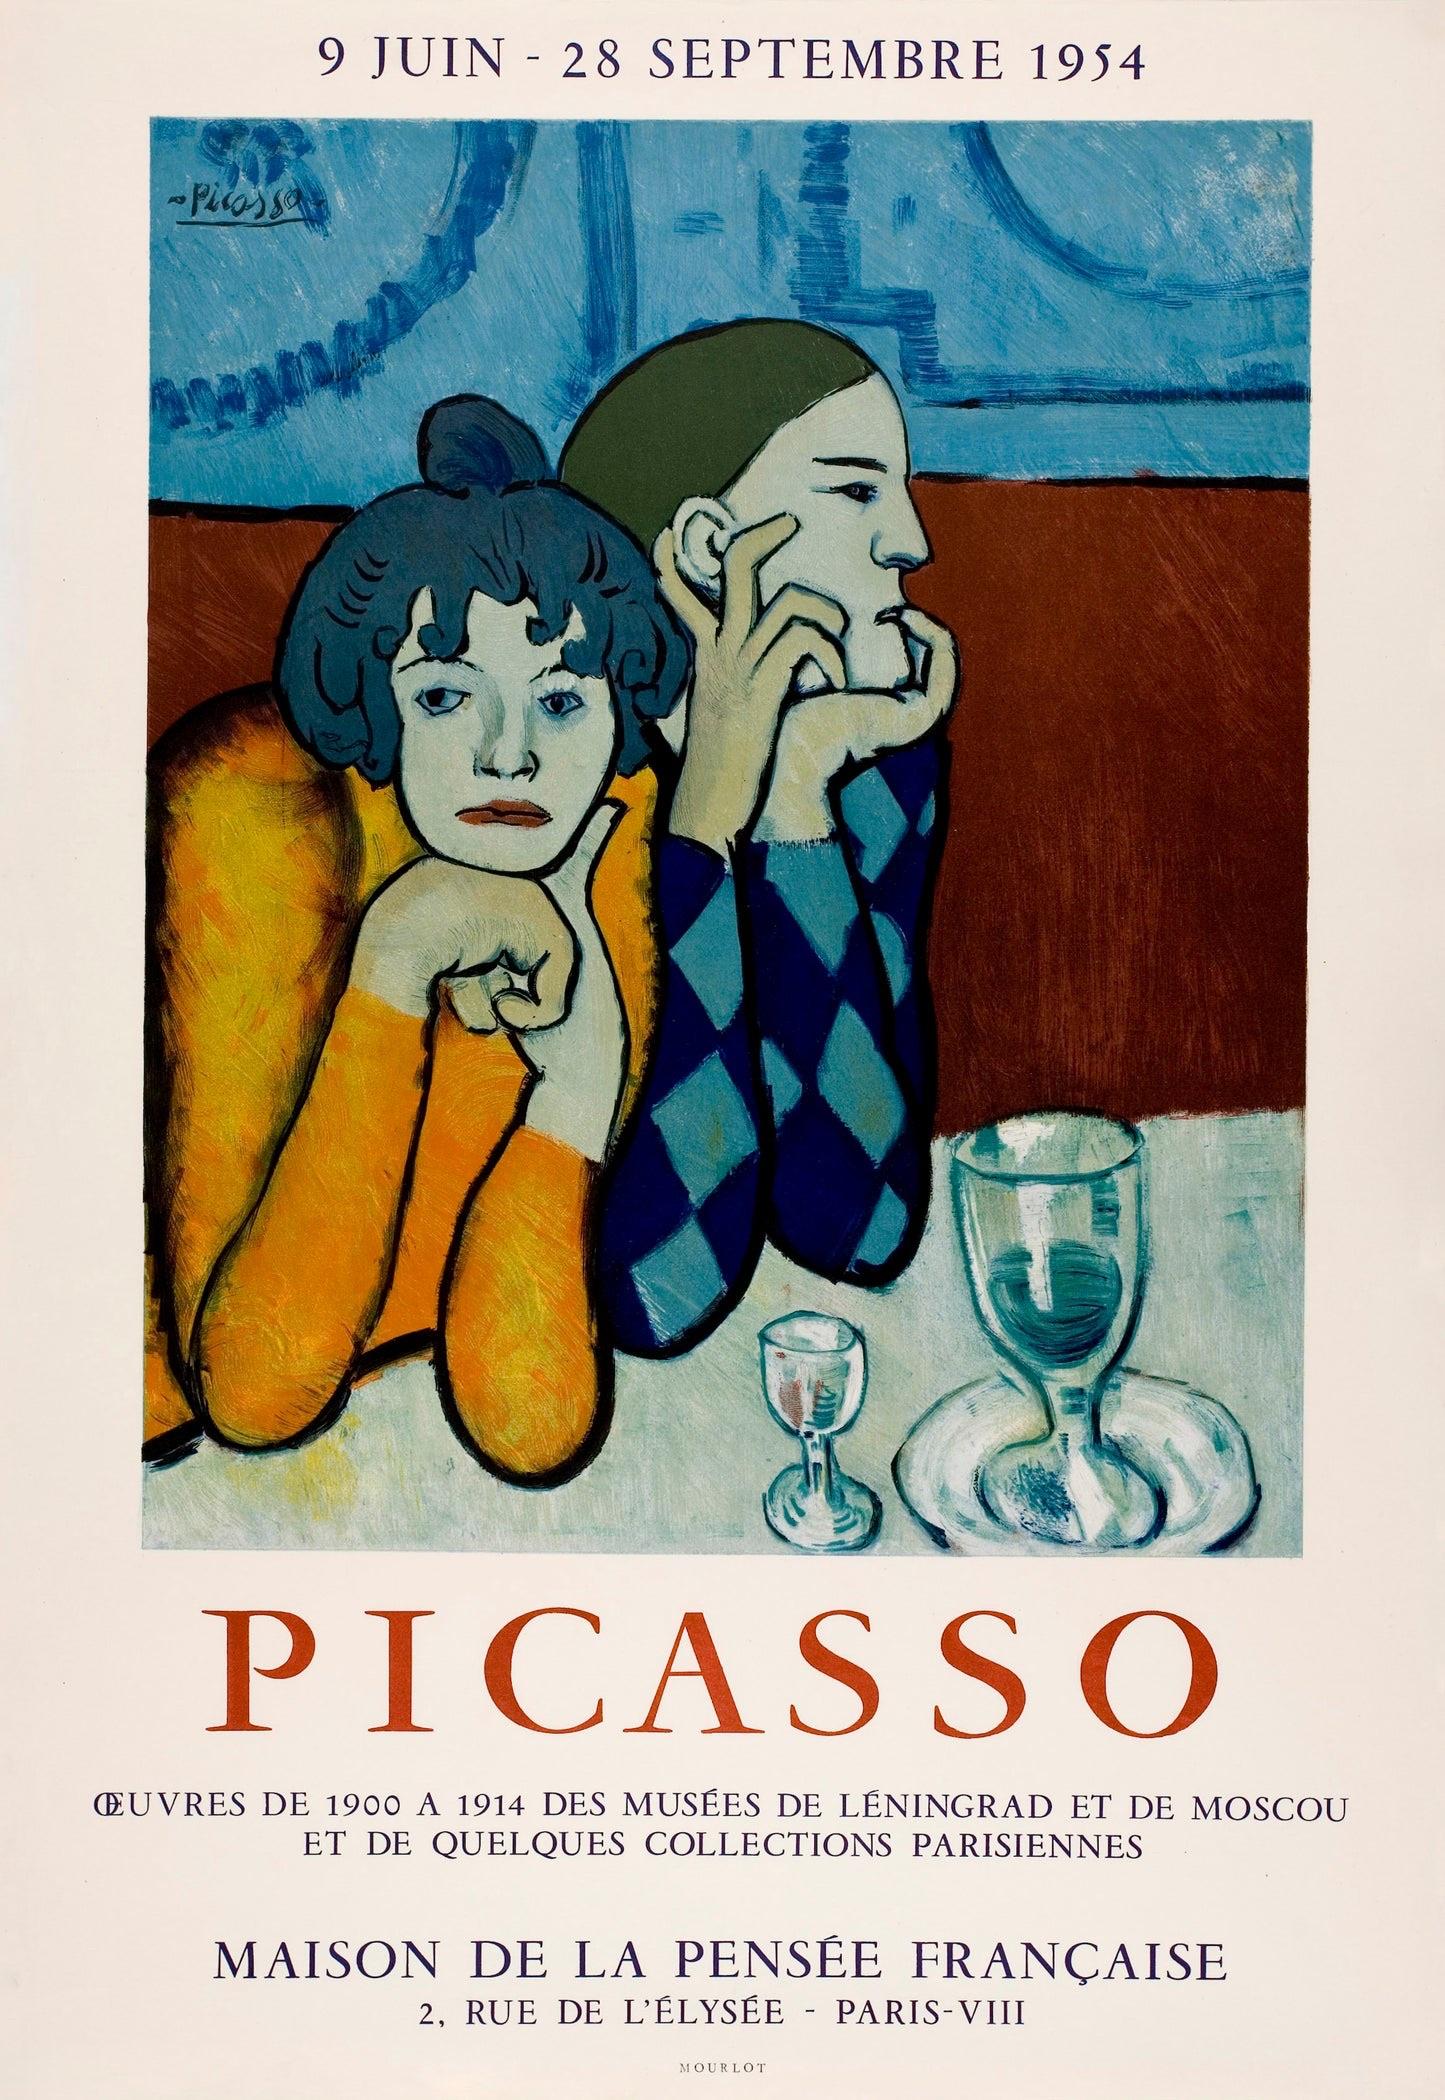 Künstler: Nach Pablo Picasso

Medium: Lithografisches Plakat, 1954

Abmessungen: 27.5 x 18,7 Zoll / 70,5 x 48 cm

Classic Poster Paper - Ausgezeichneter Zustand A+

Die klassische Silhouette zweier Frauen, die über dem weißen Tischtuch eines